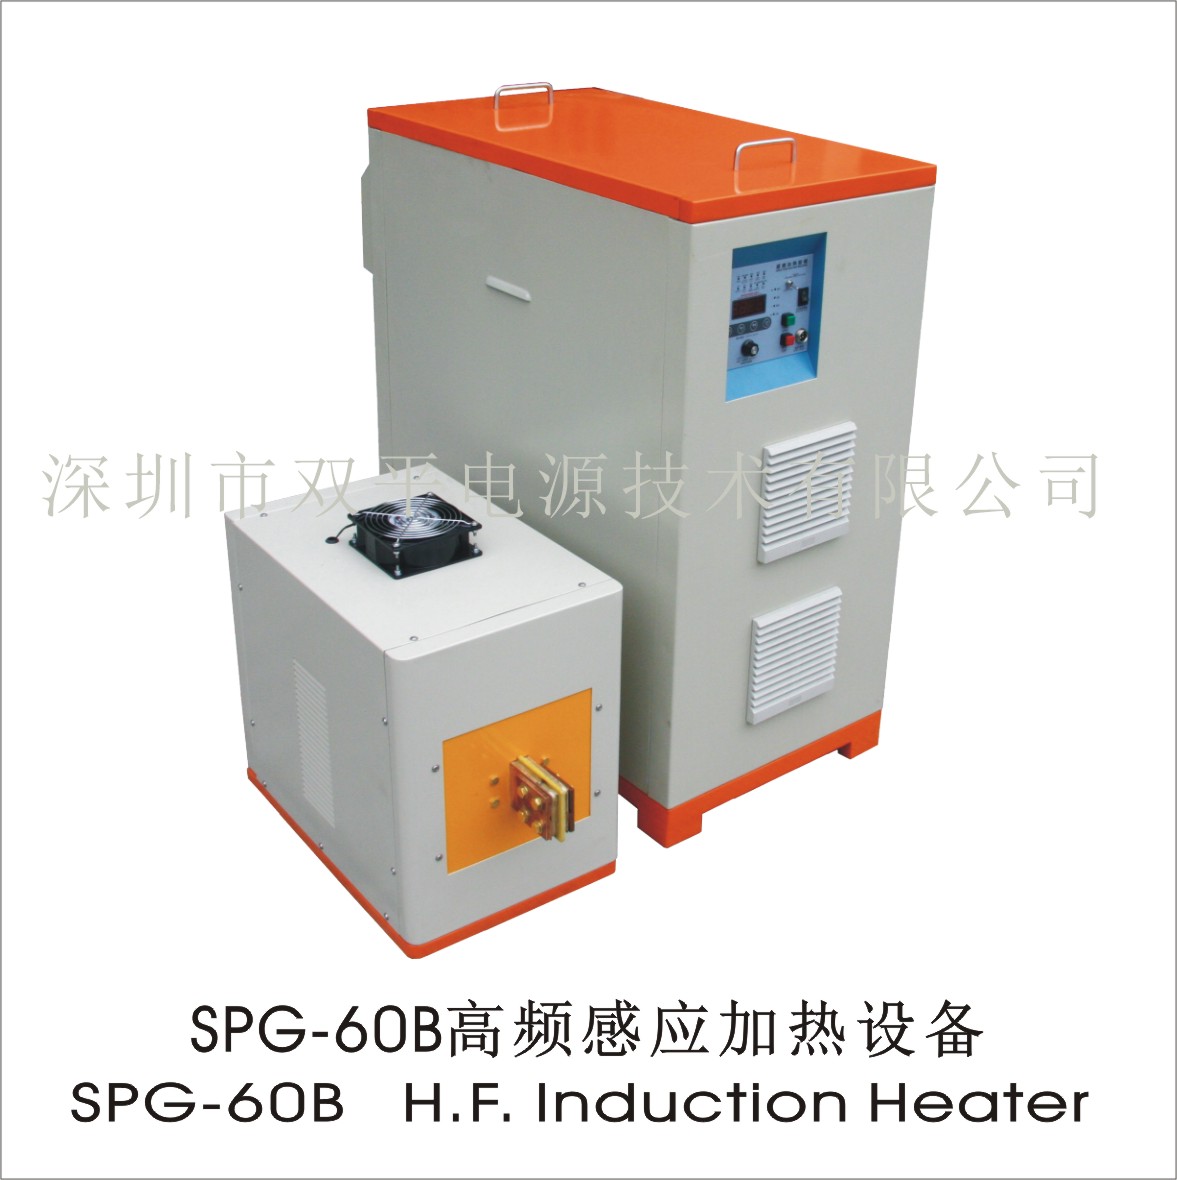 大小齿轮热处理设备深圳双平SPG-60B高频感应加热设备